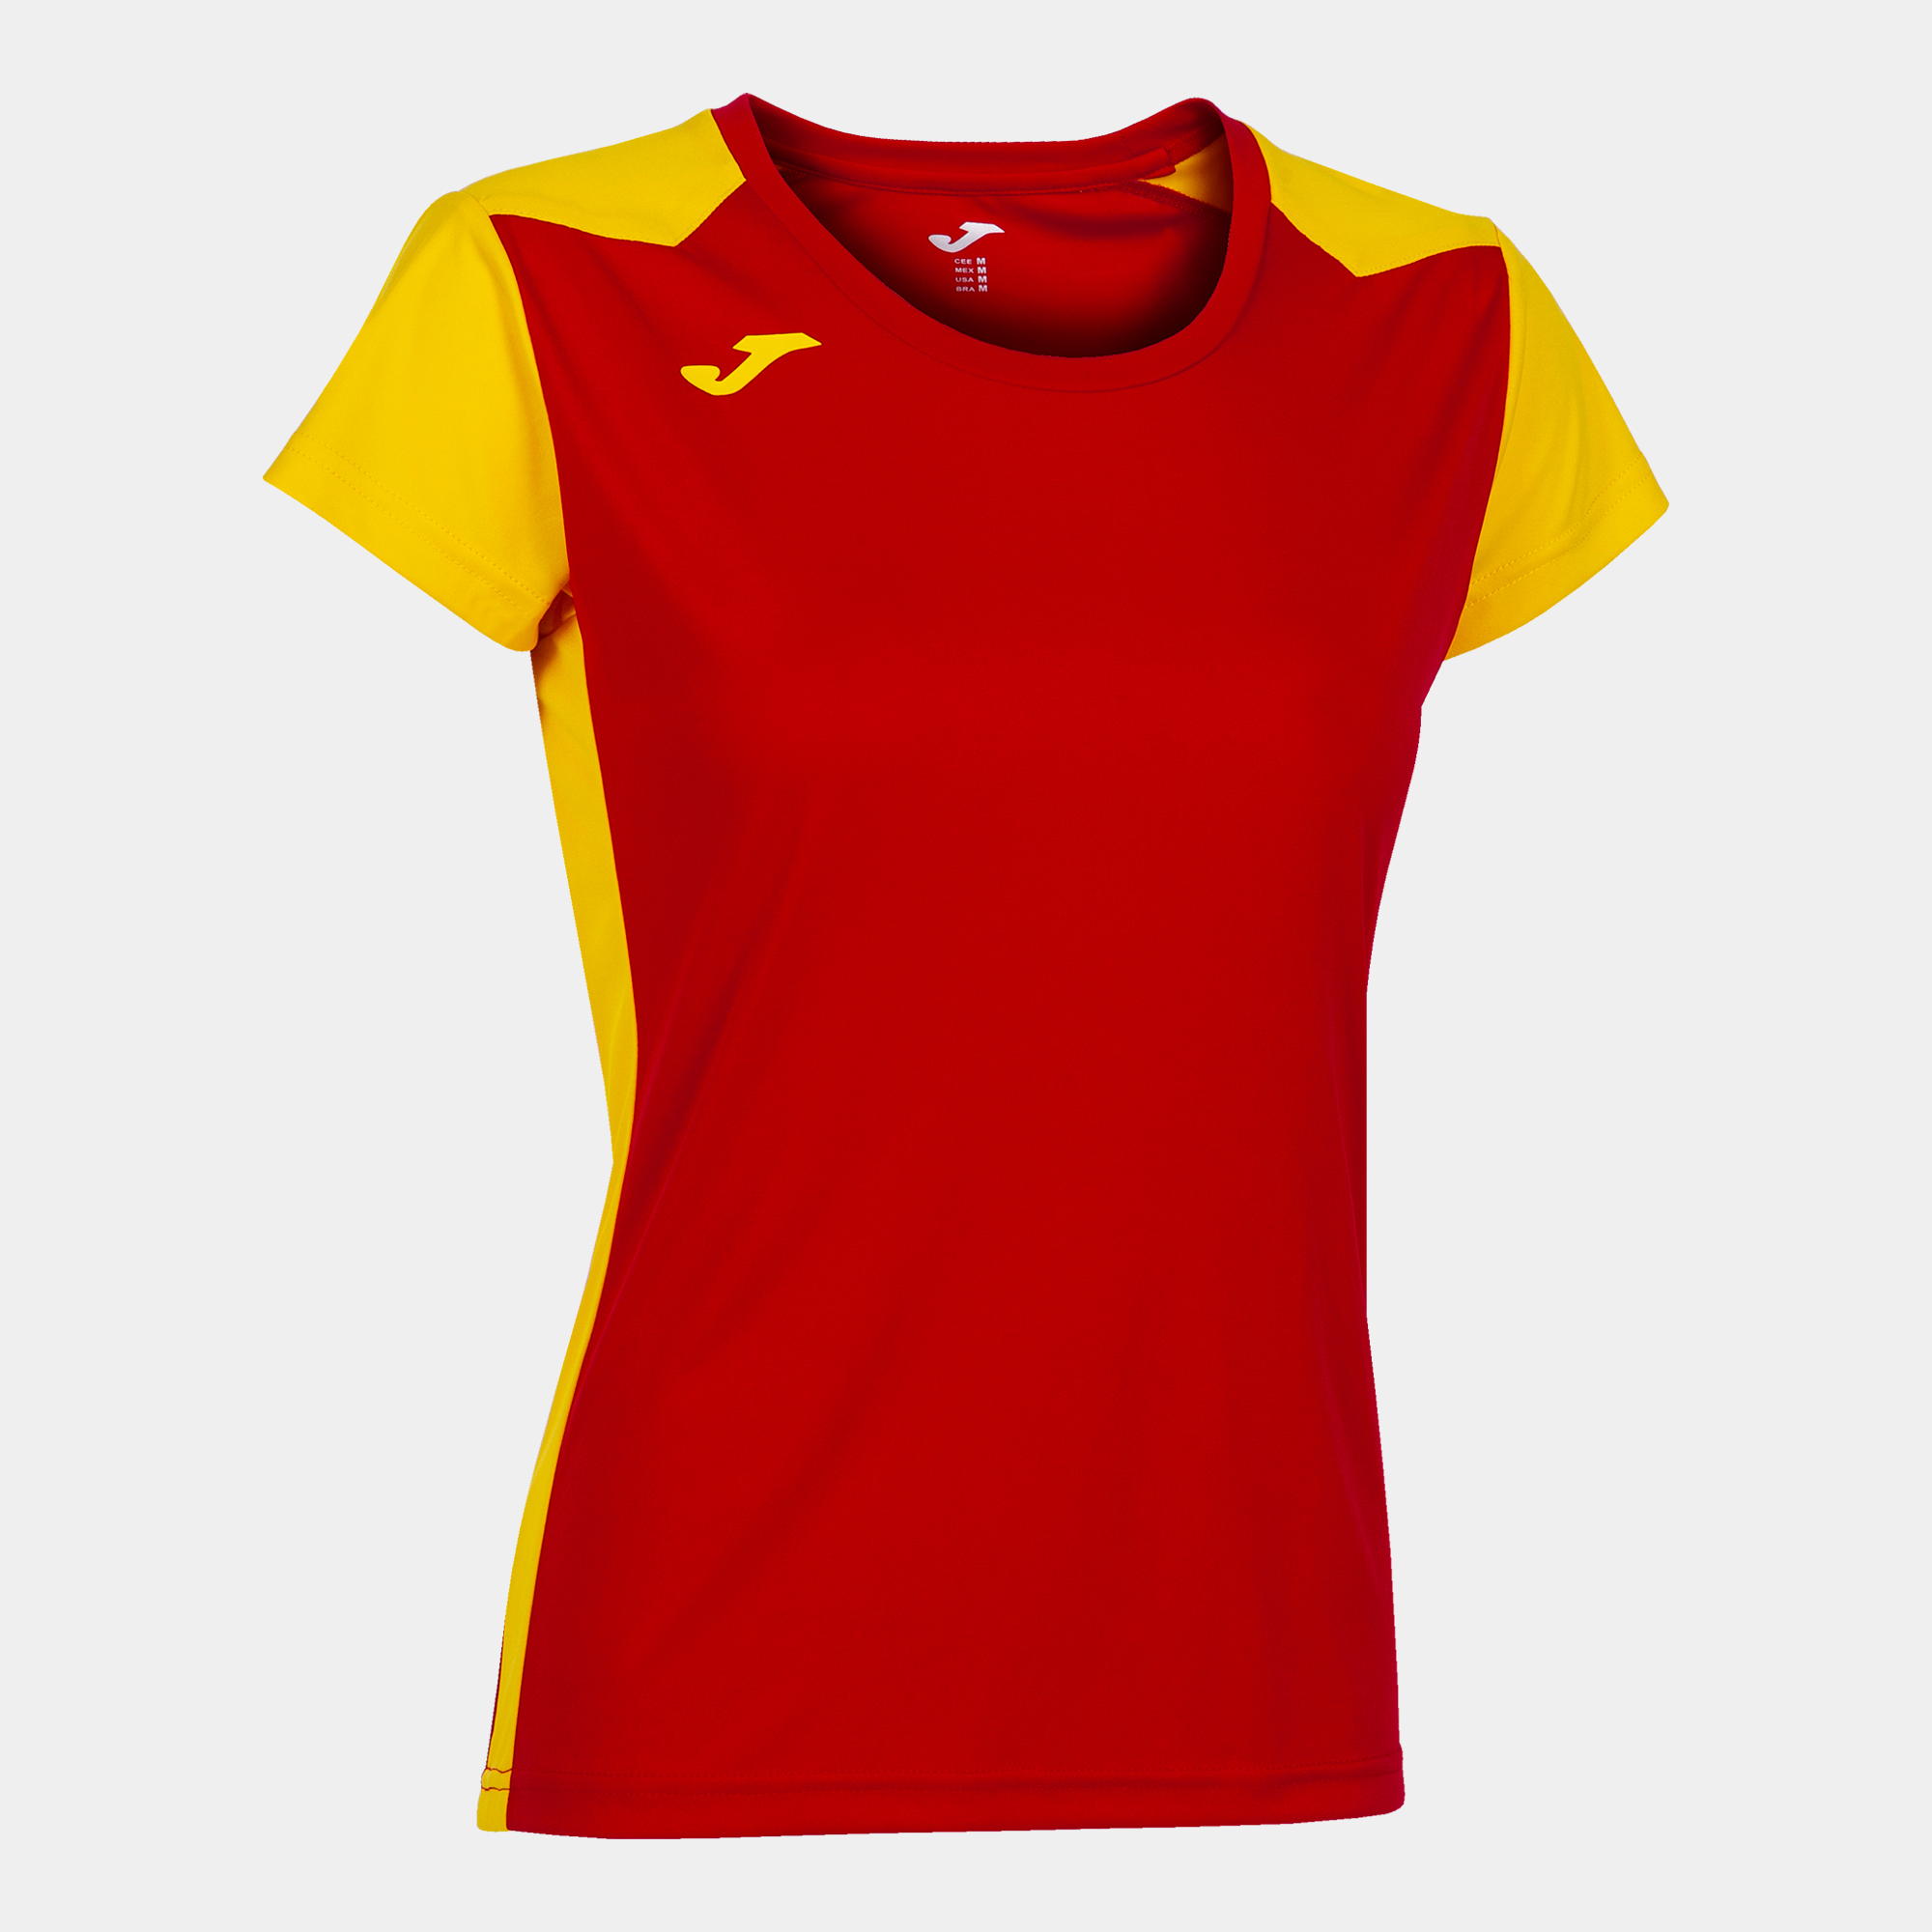 Camiseta Manga Corta Joma Record Ii Rojo Amarillo - rojo-amarillo - 